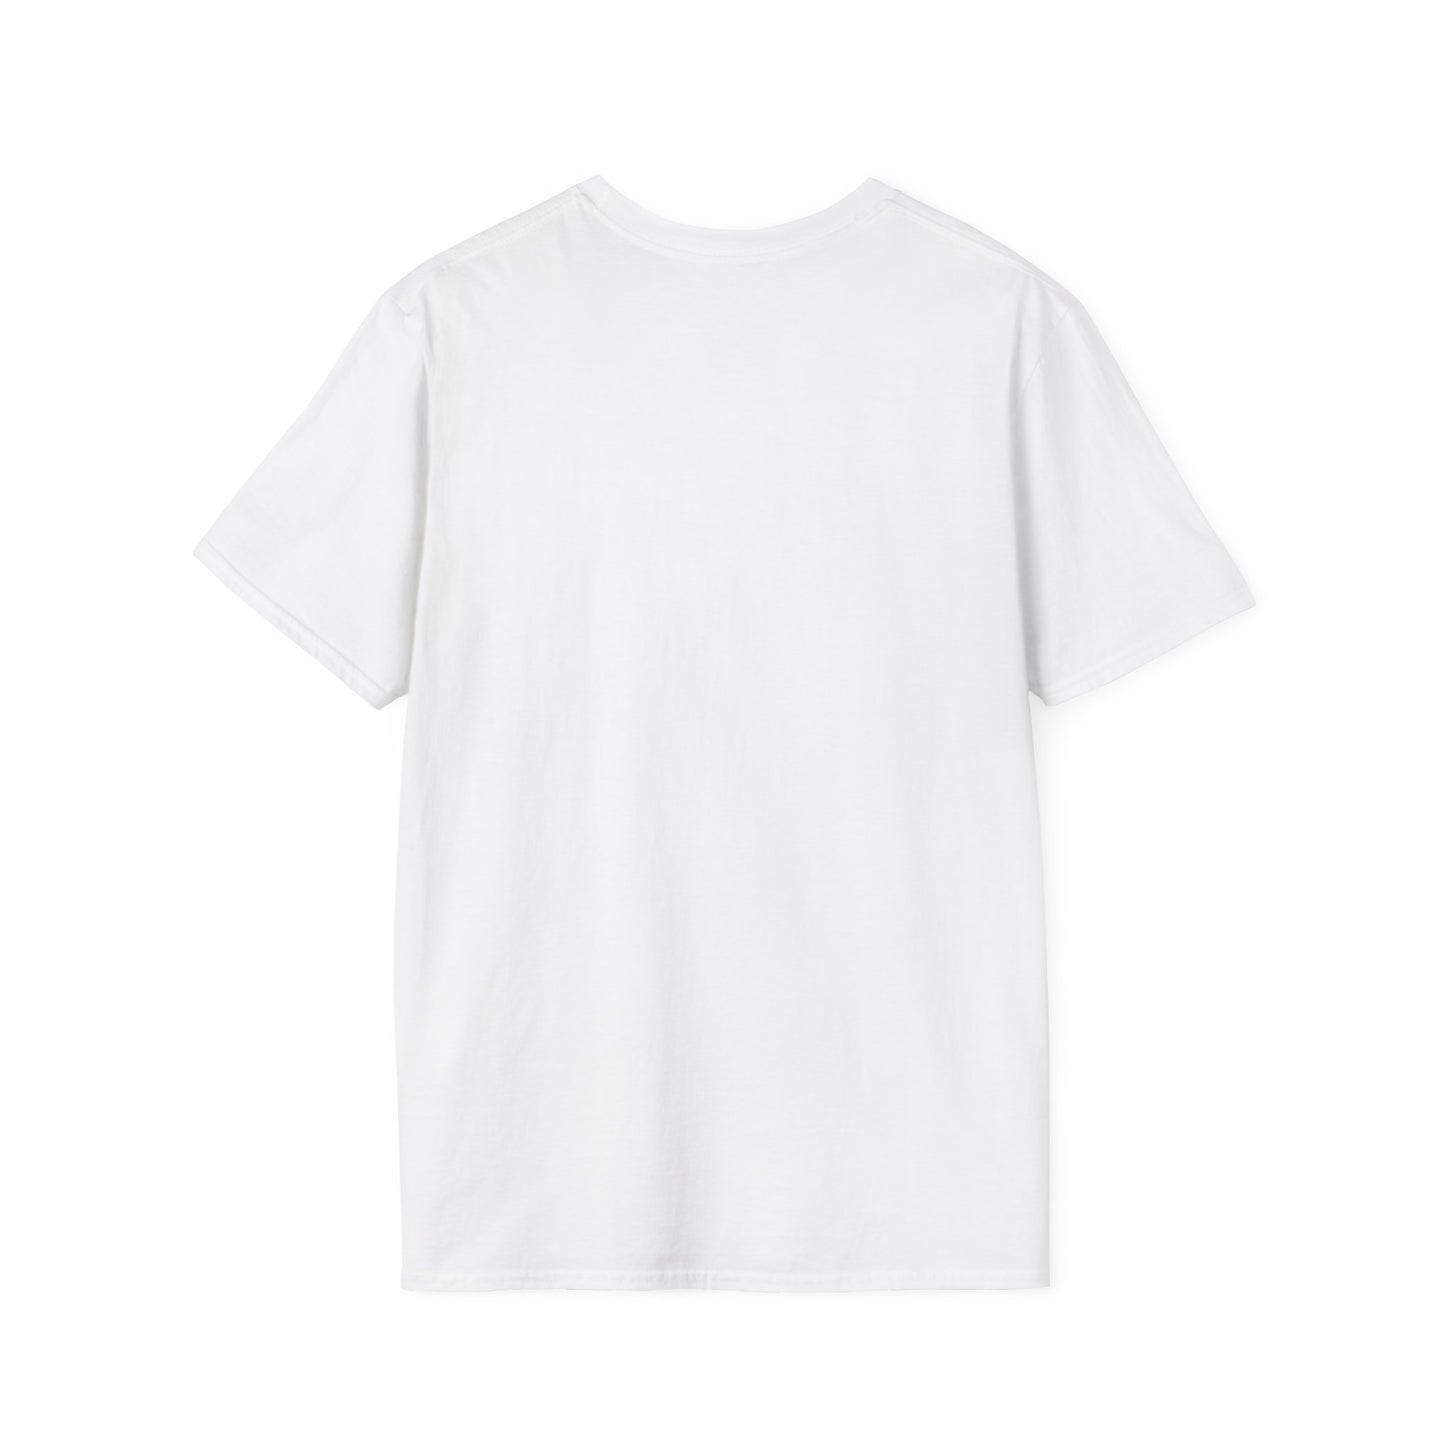 TG-15 Unisex Softstyle T-Shirt